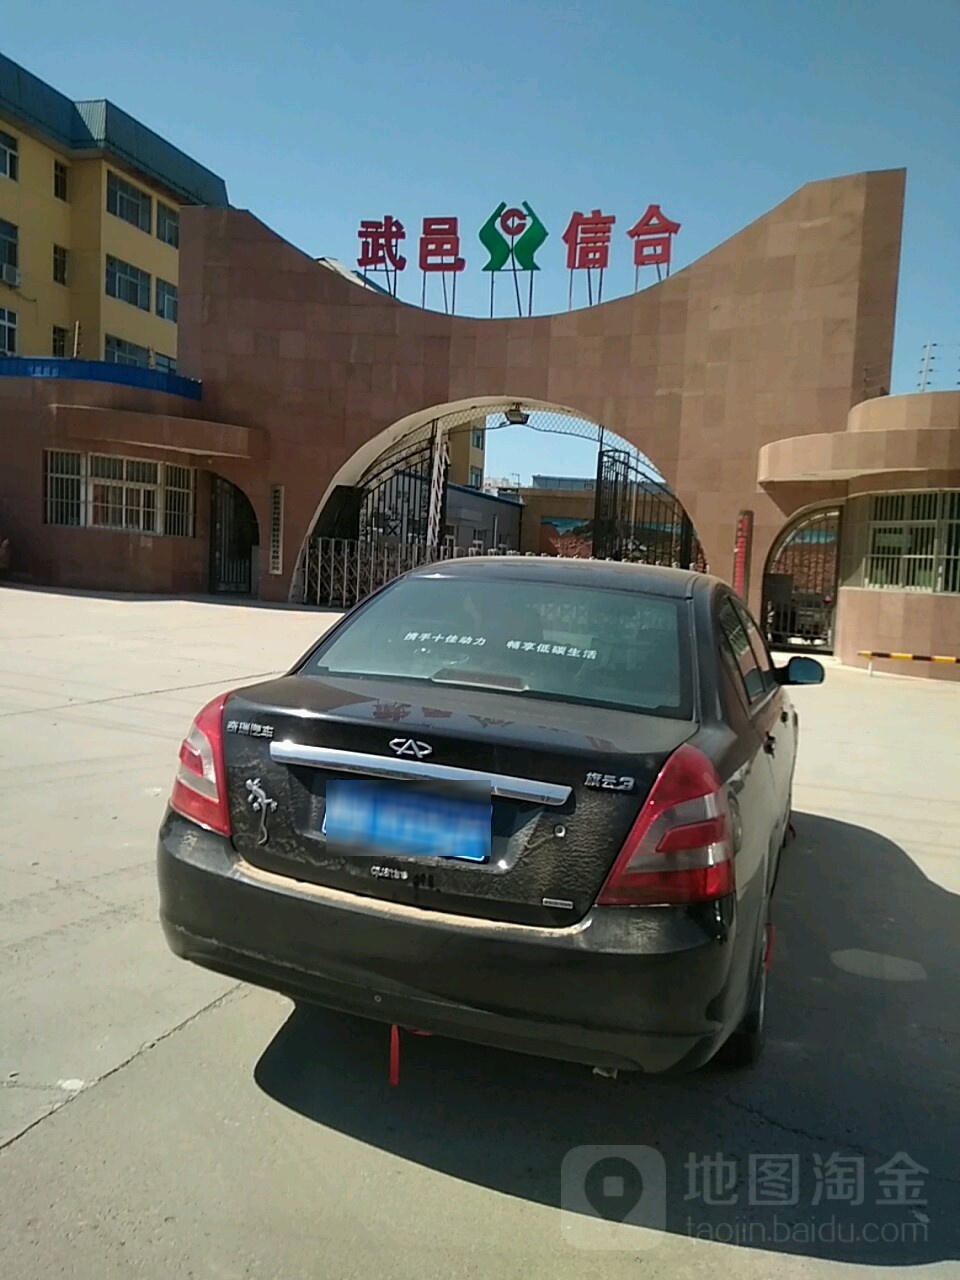 河北省农村信用社